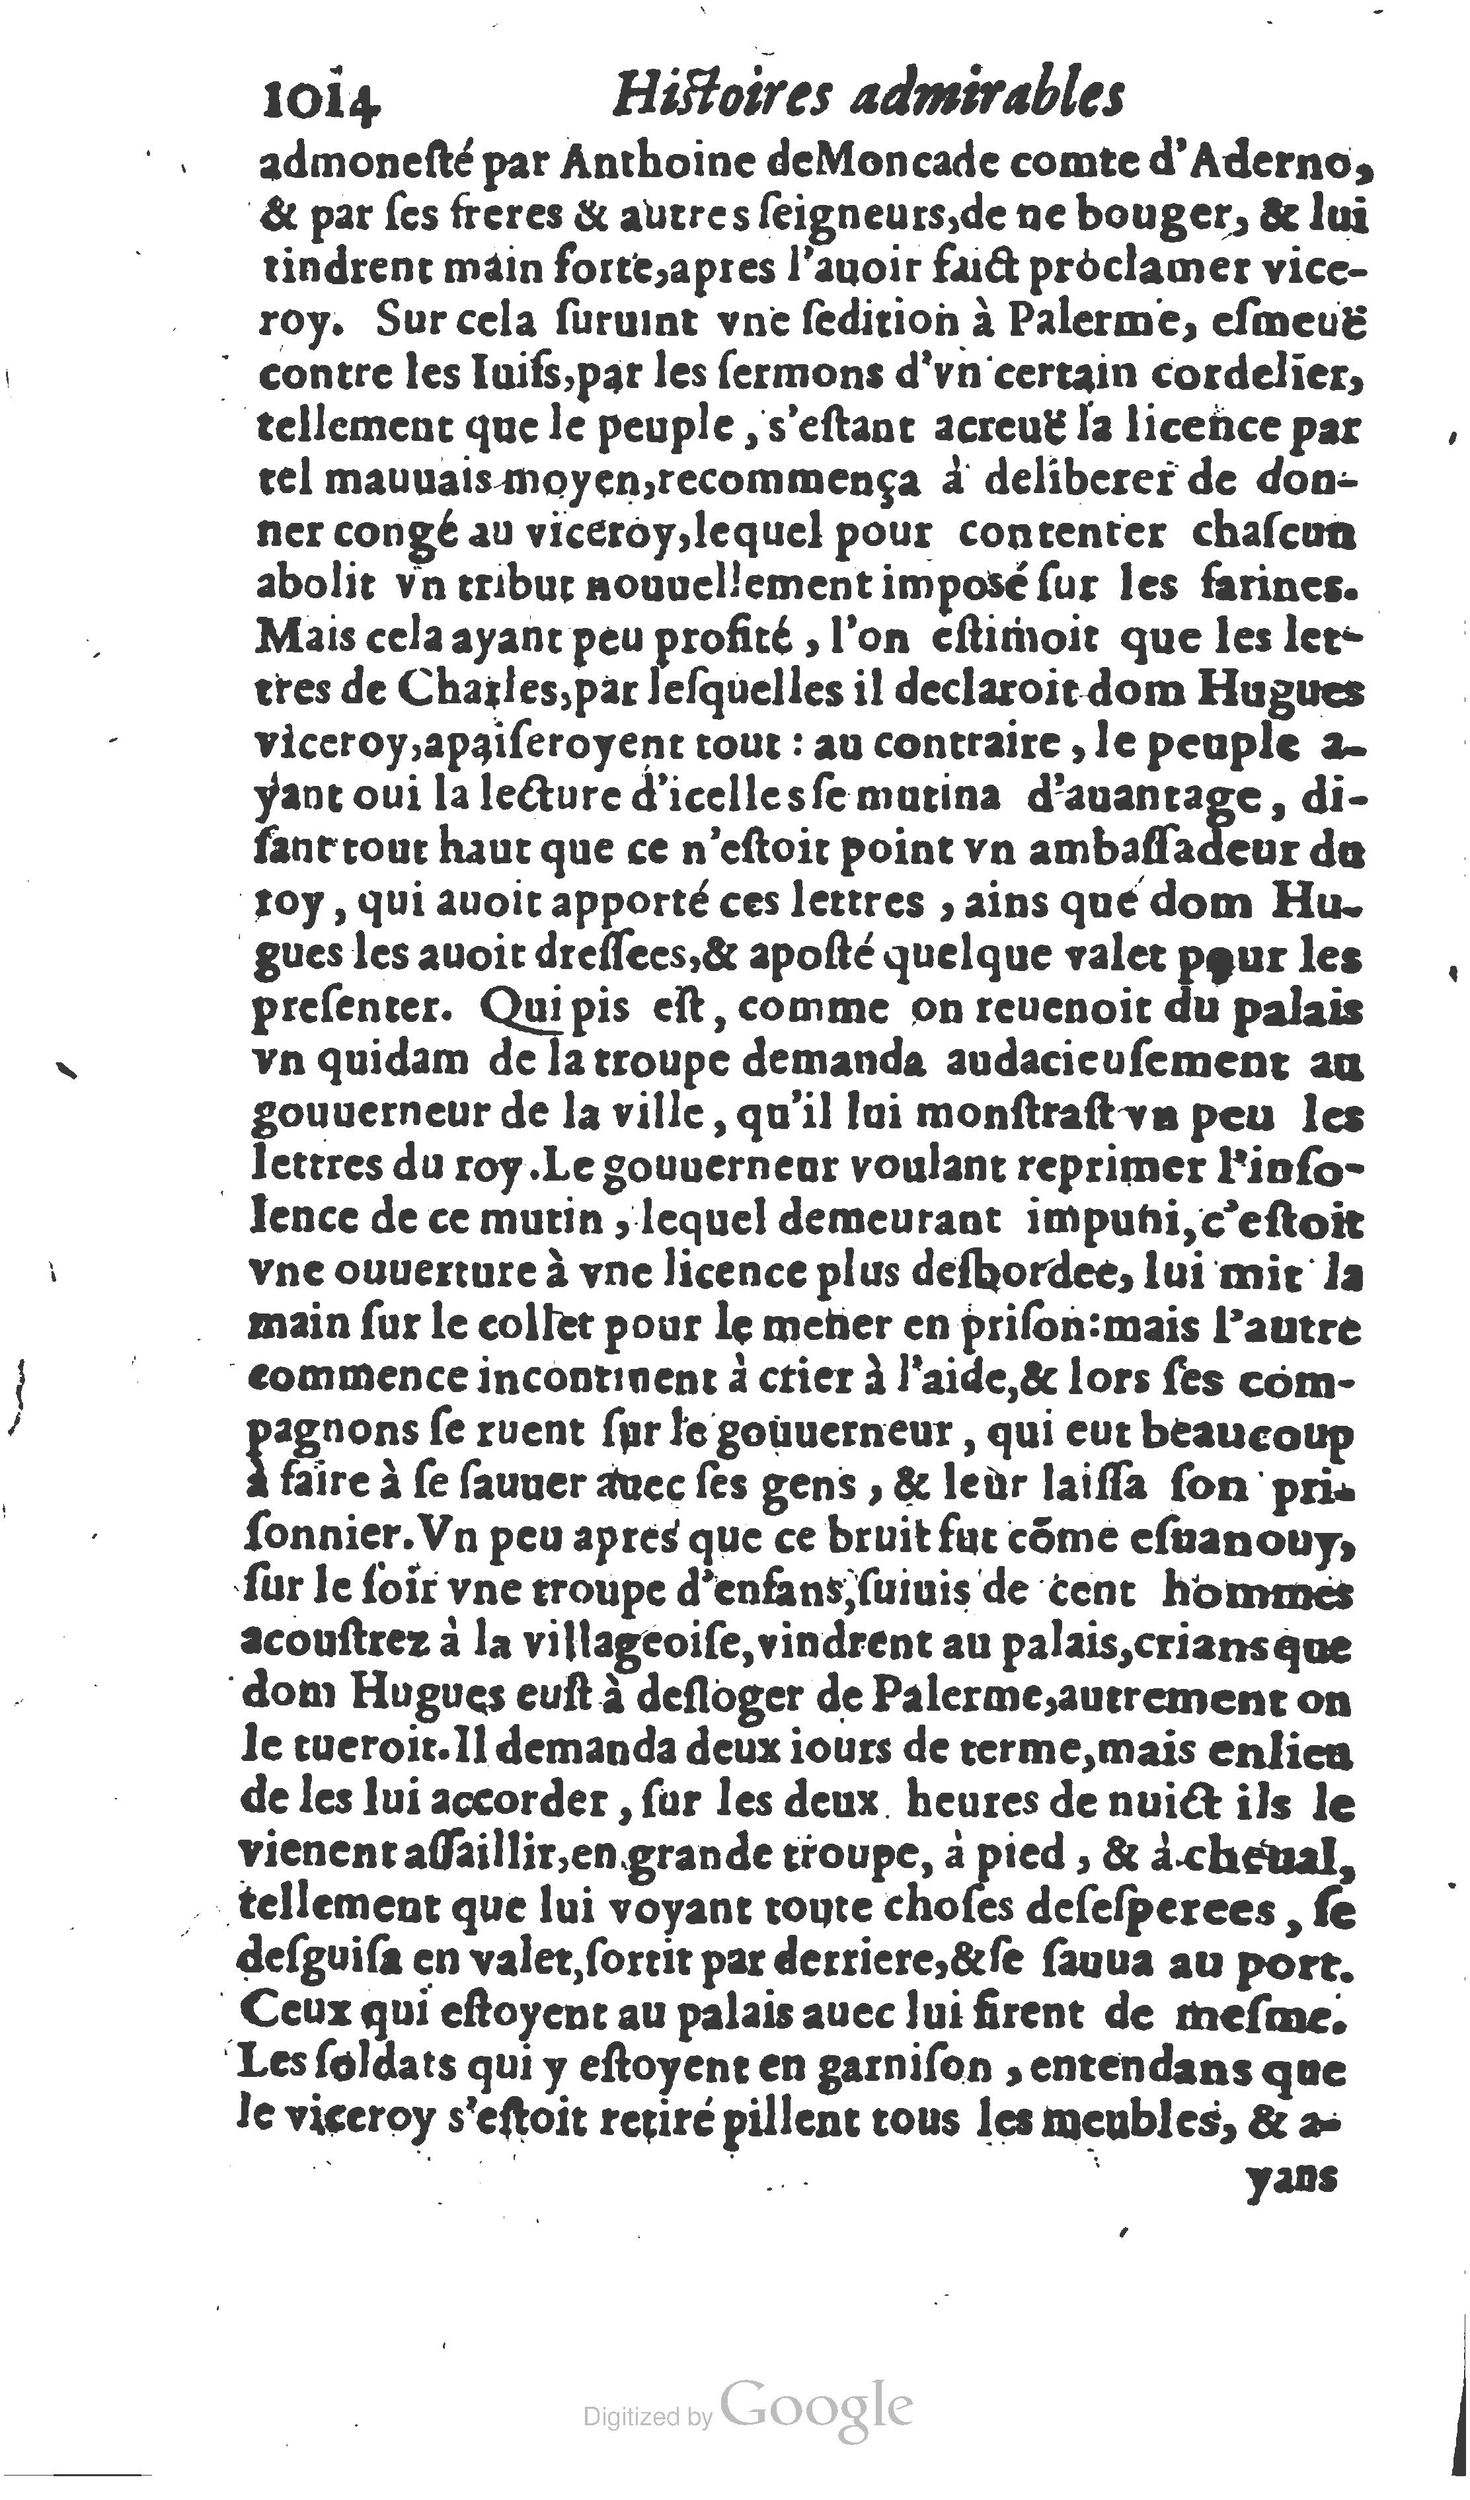 1610 Trésor d’histoires admirables et mémorables de nostre temps Marceau Princeton_Page_1035.jpg